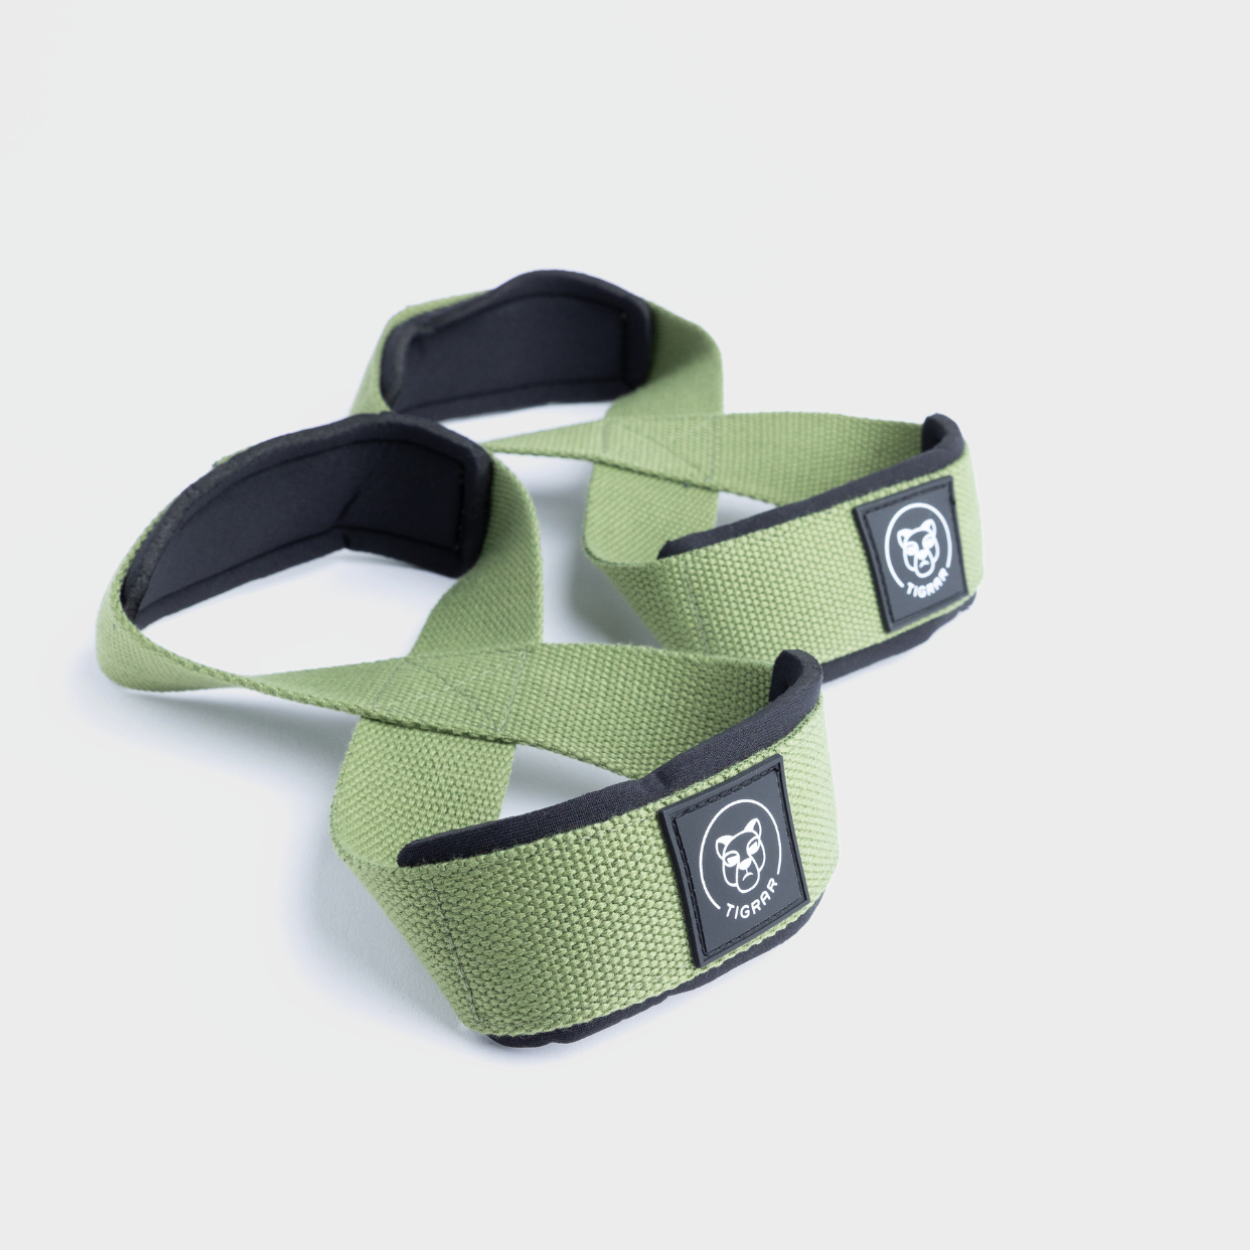 Groene Tigrar Figure 8 lifting straps, robuust voor elke training, tegen een grijze achtergrond.